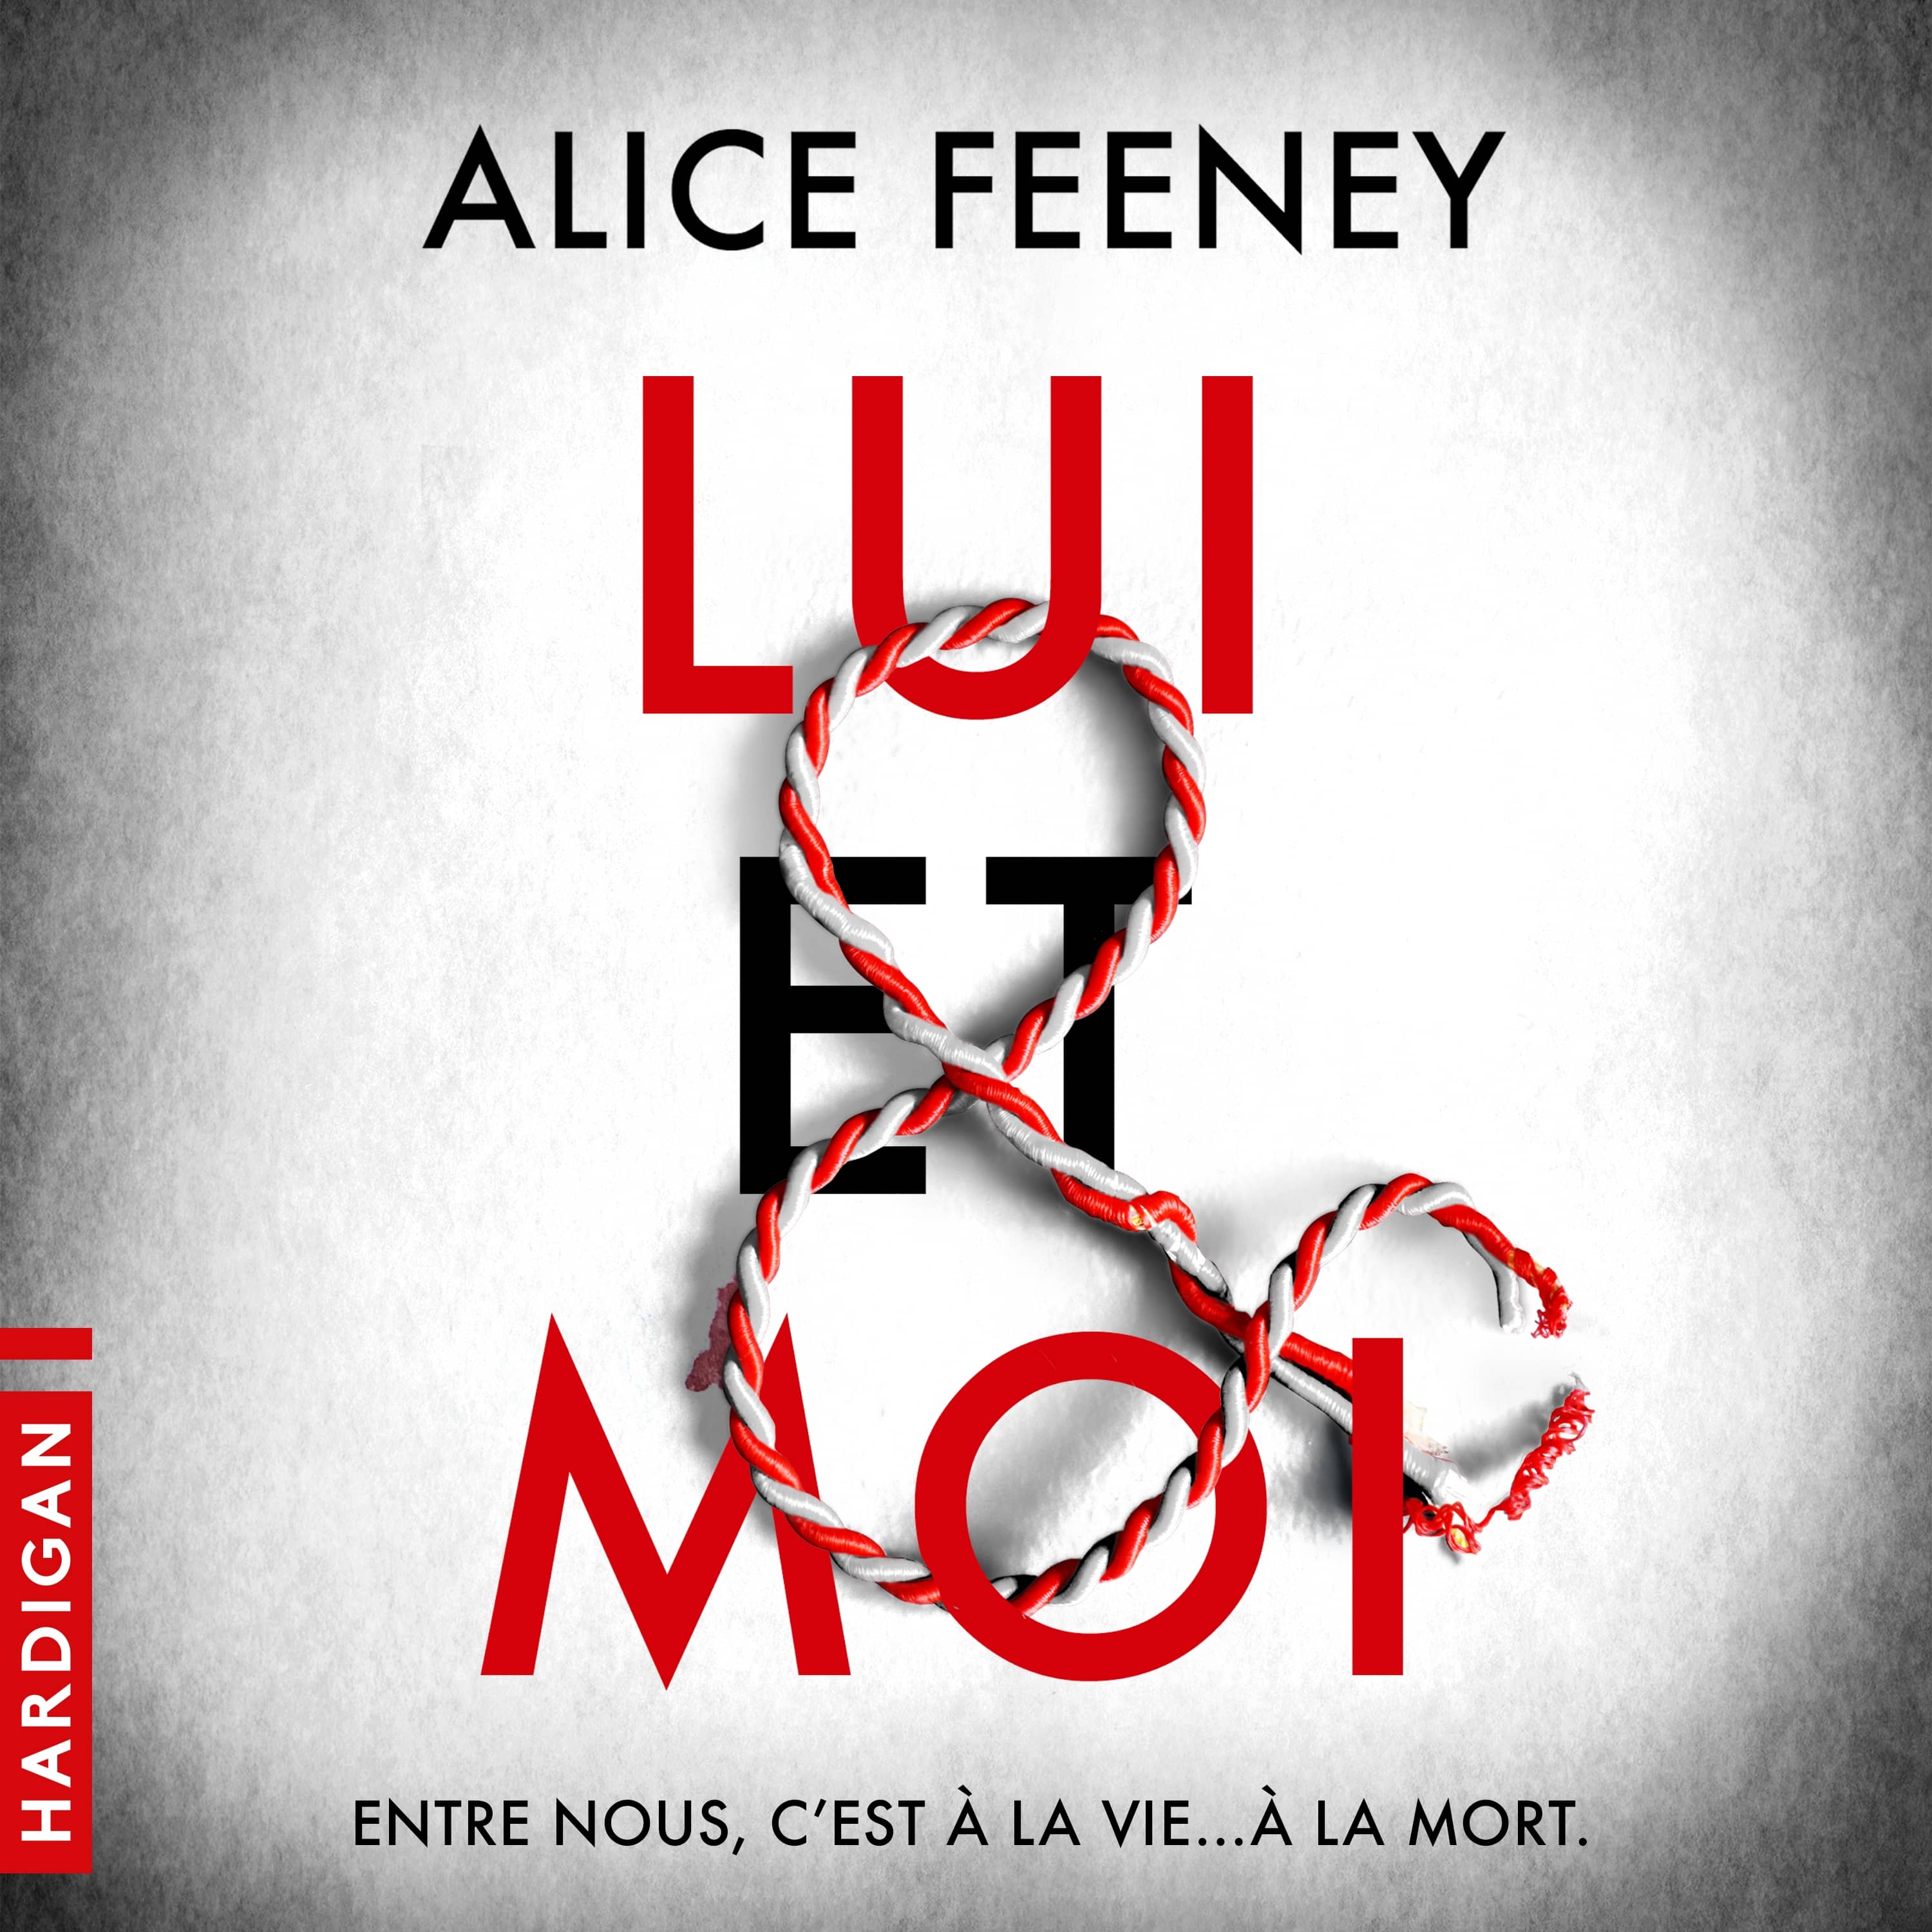 Couverture du livre audio Lui & Moi De Alice Feeney 